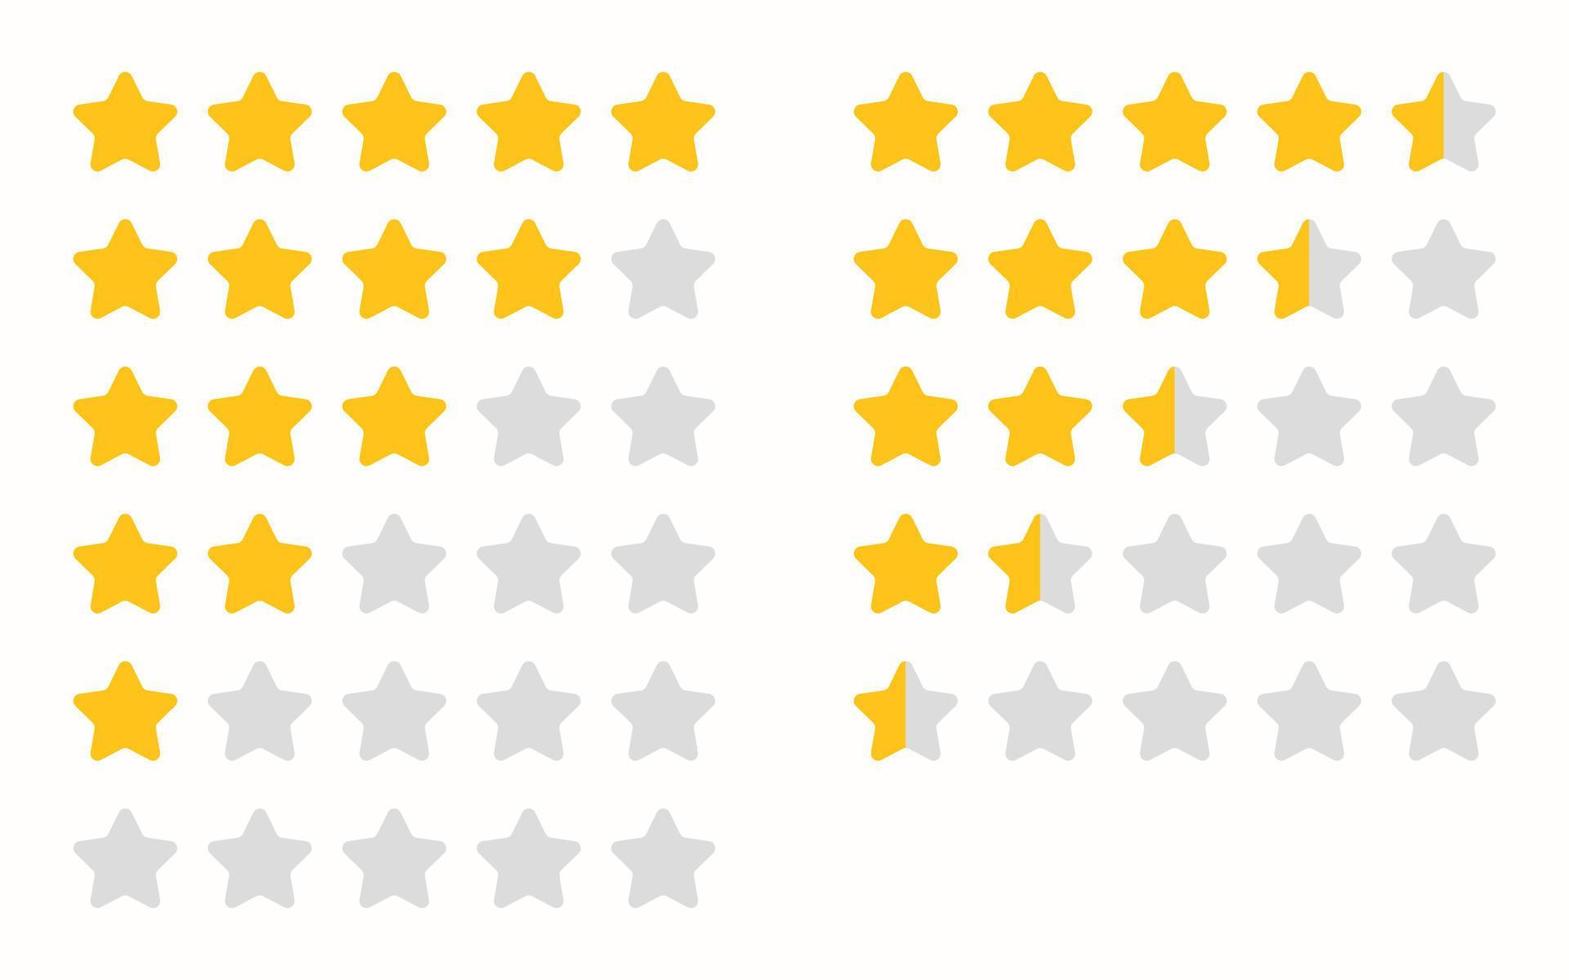 vijf sterren waardering. klantbeoordeling of feedback. gouden vijf sterren, halve sterren op een witte achtergrond. sterren stellen beoordeling in voor apps of websites. vector